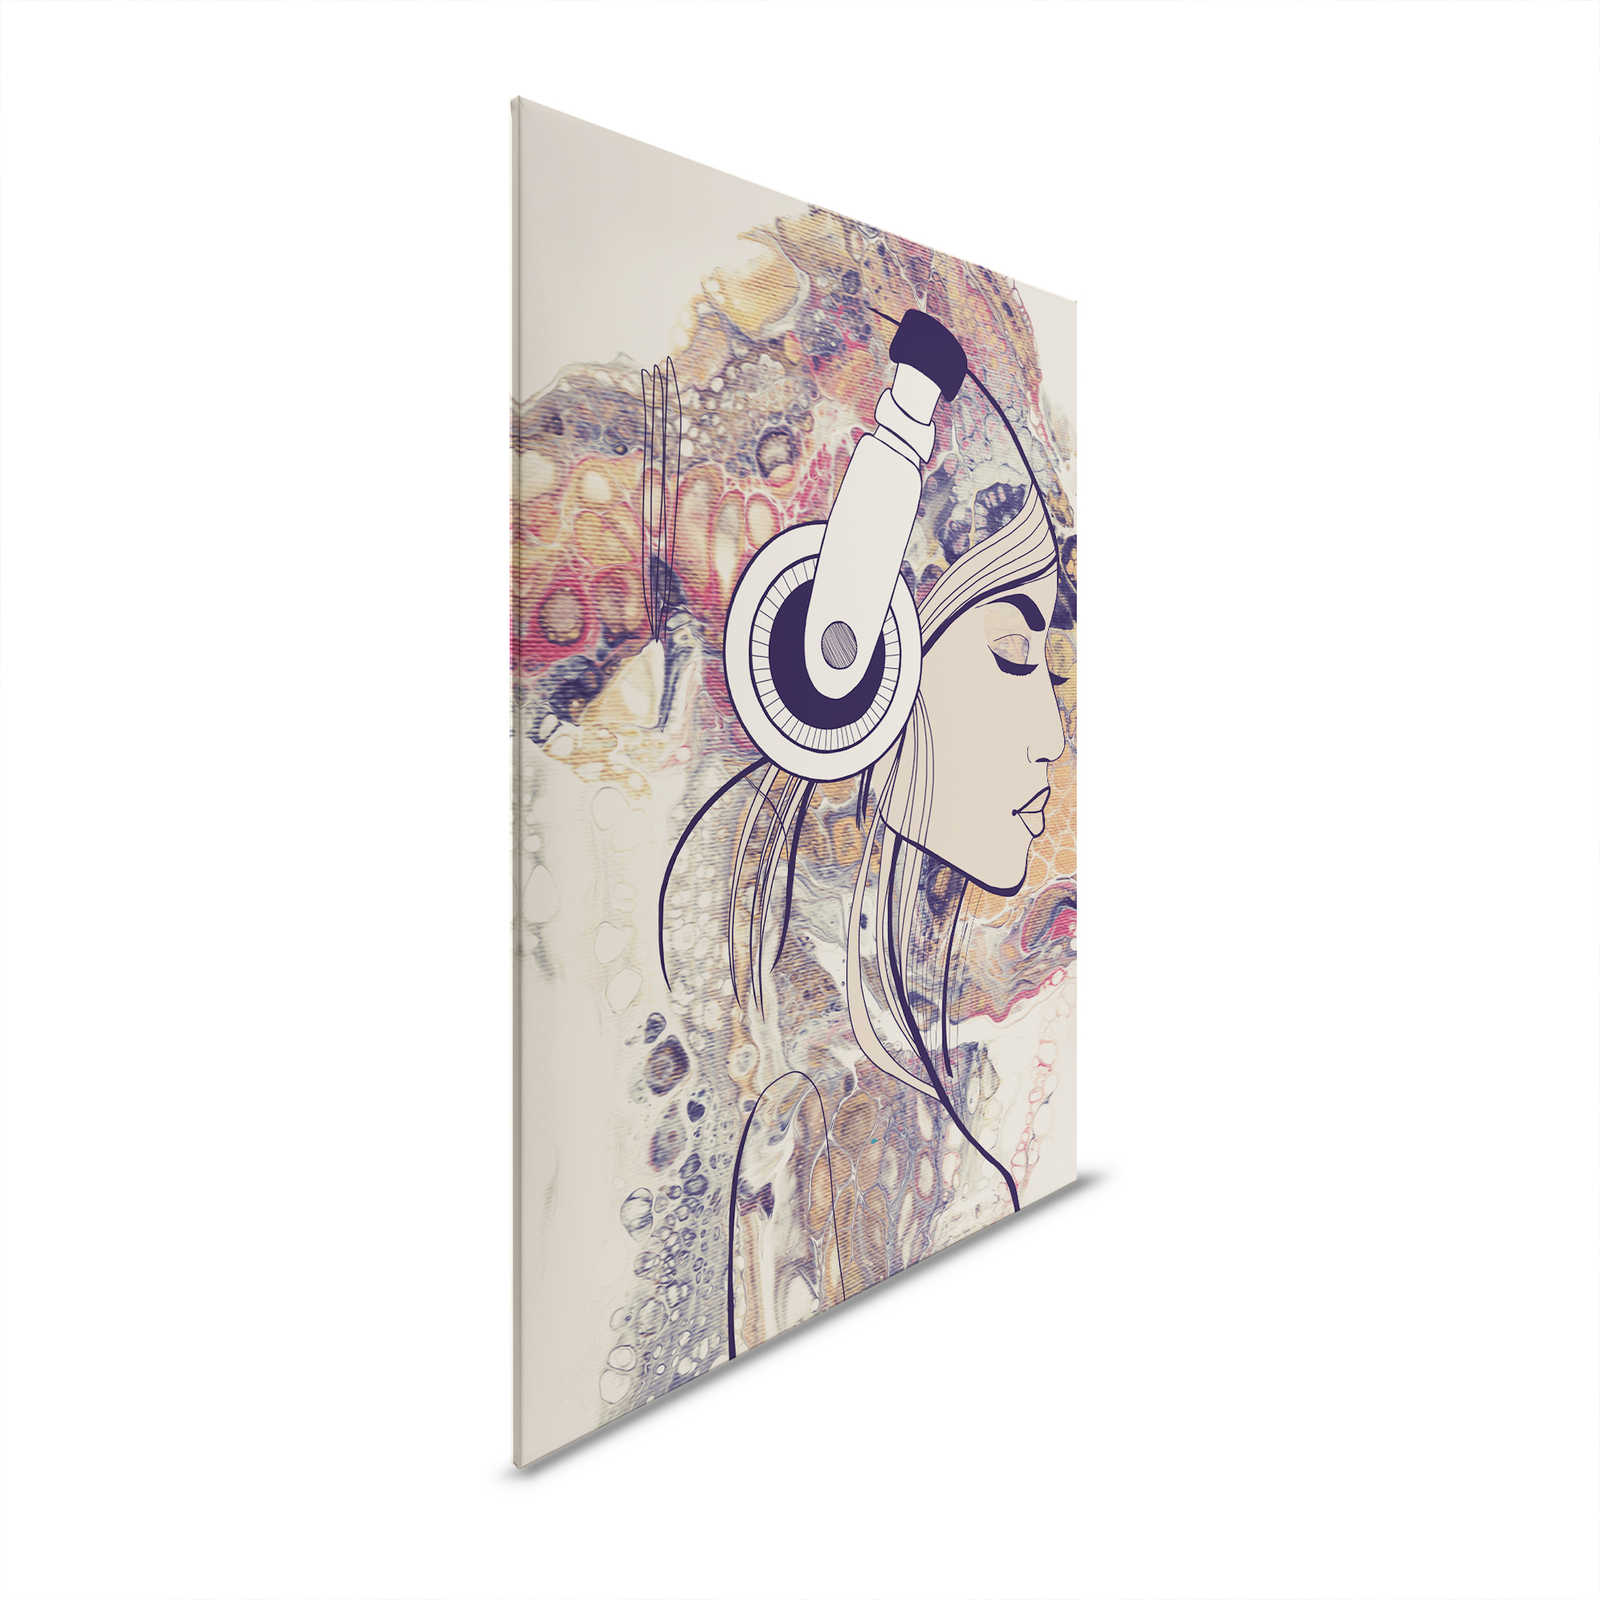         Leinwandbild Acryl & Line Art Frauenfigur mit Kopfhörern – 1,20 m x 0,80 m
    